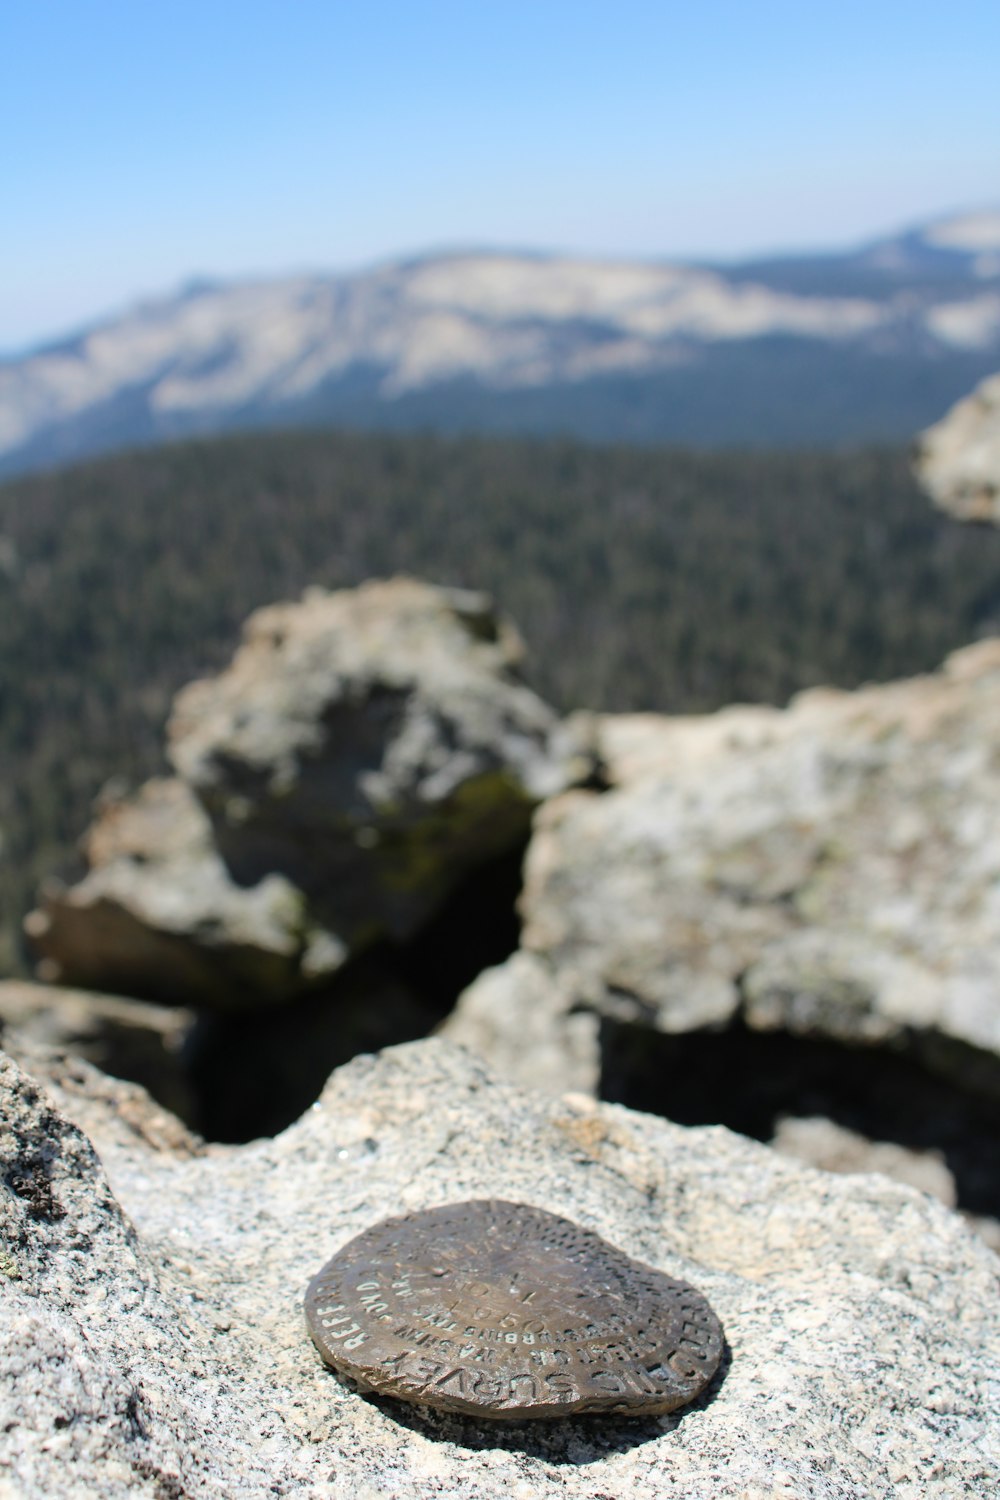 a rock on a rocky surface